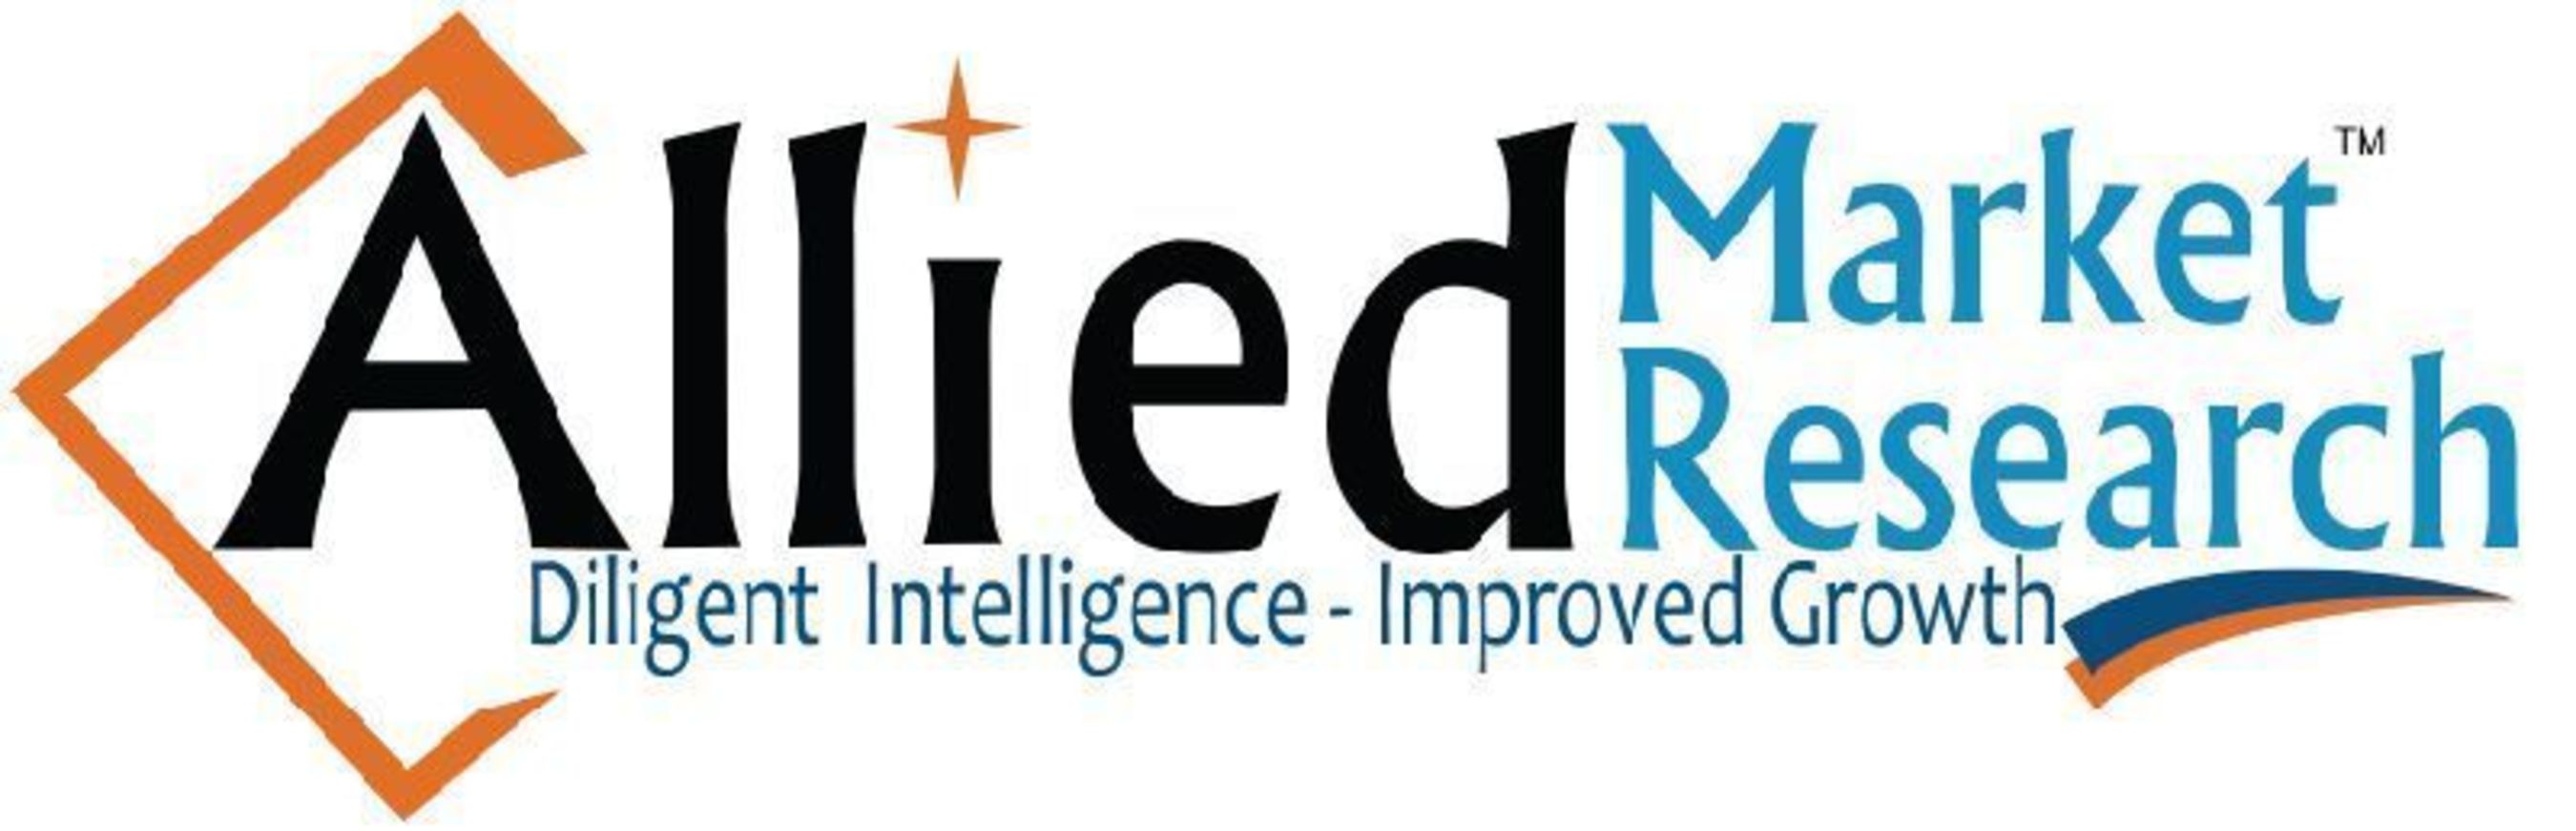 Allied Market Research Logo (PRNewsFoto/ALLIED MARKET RESEARCH)